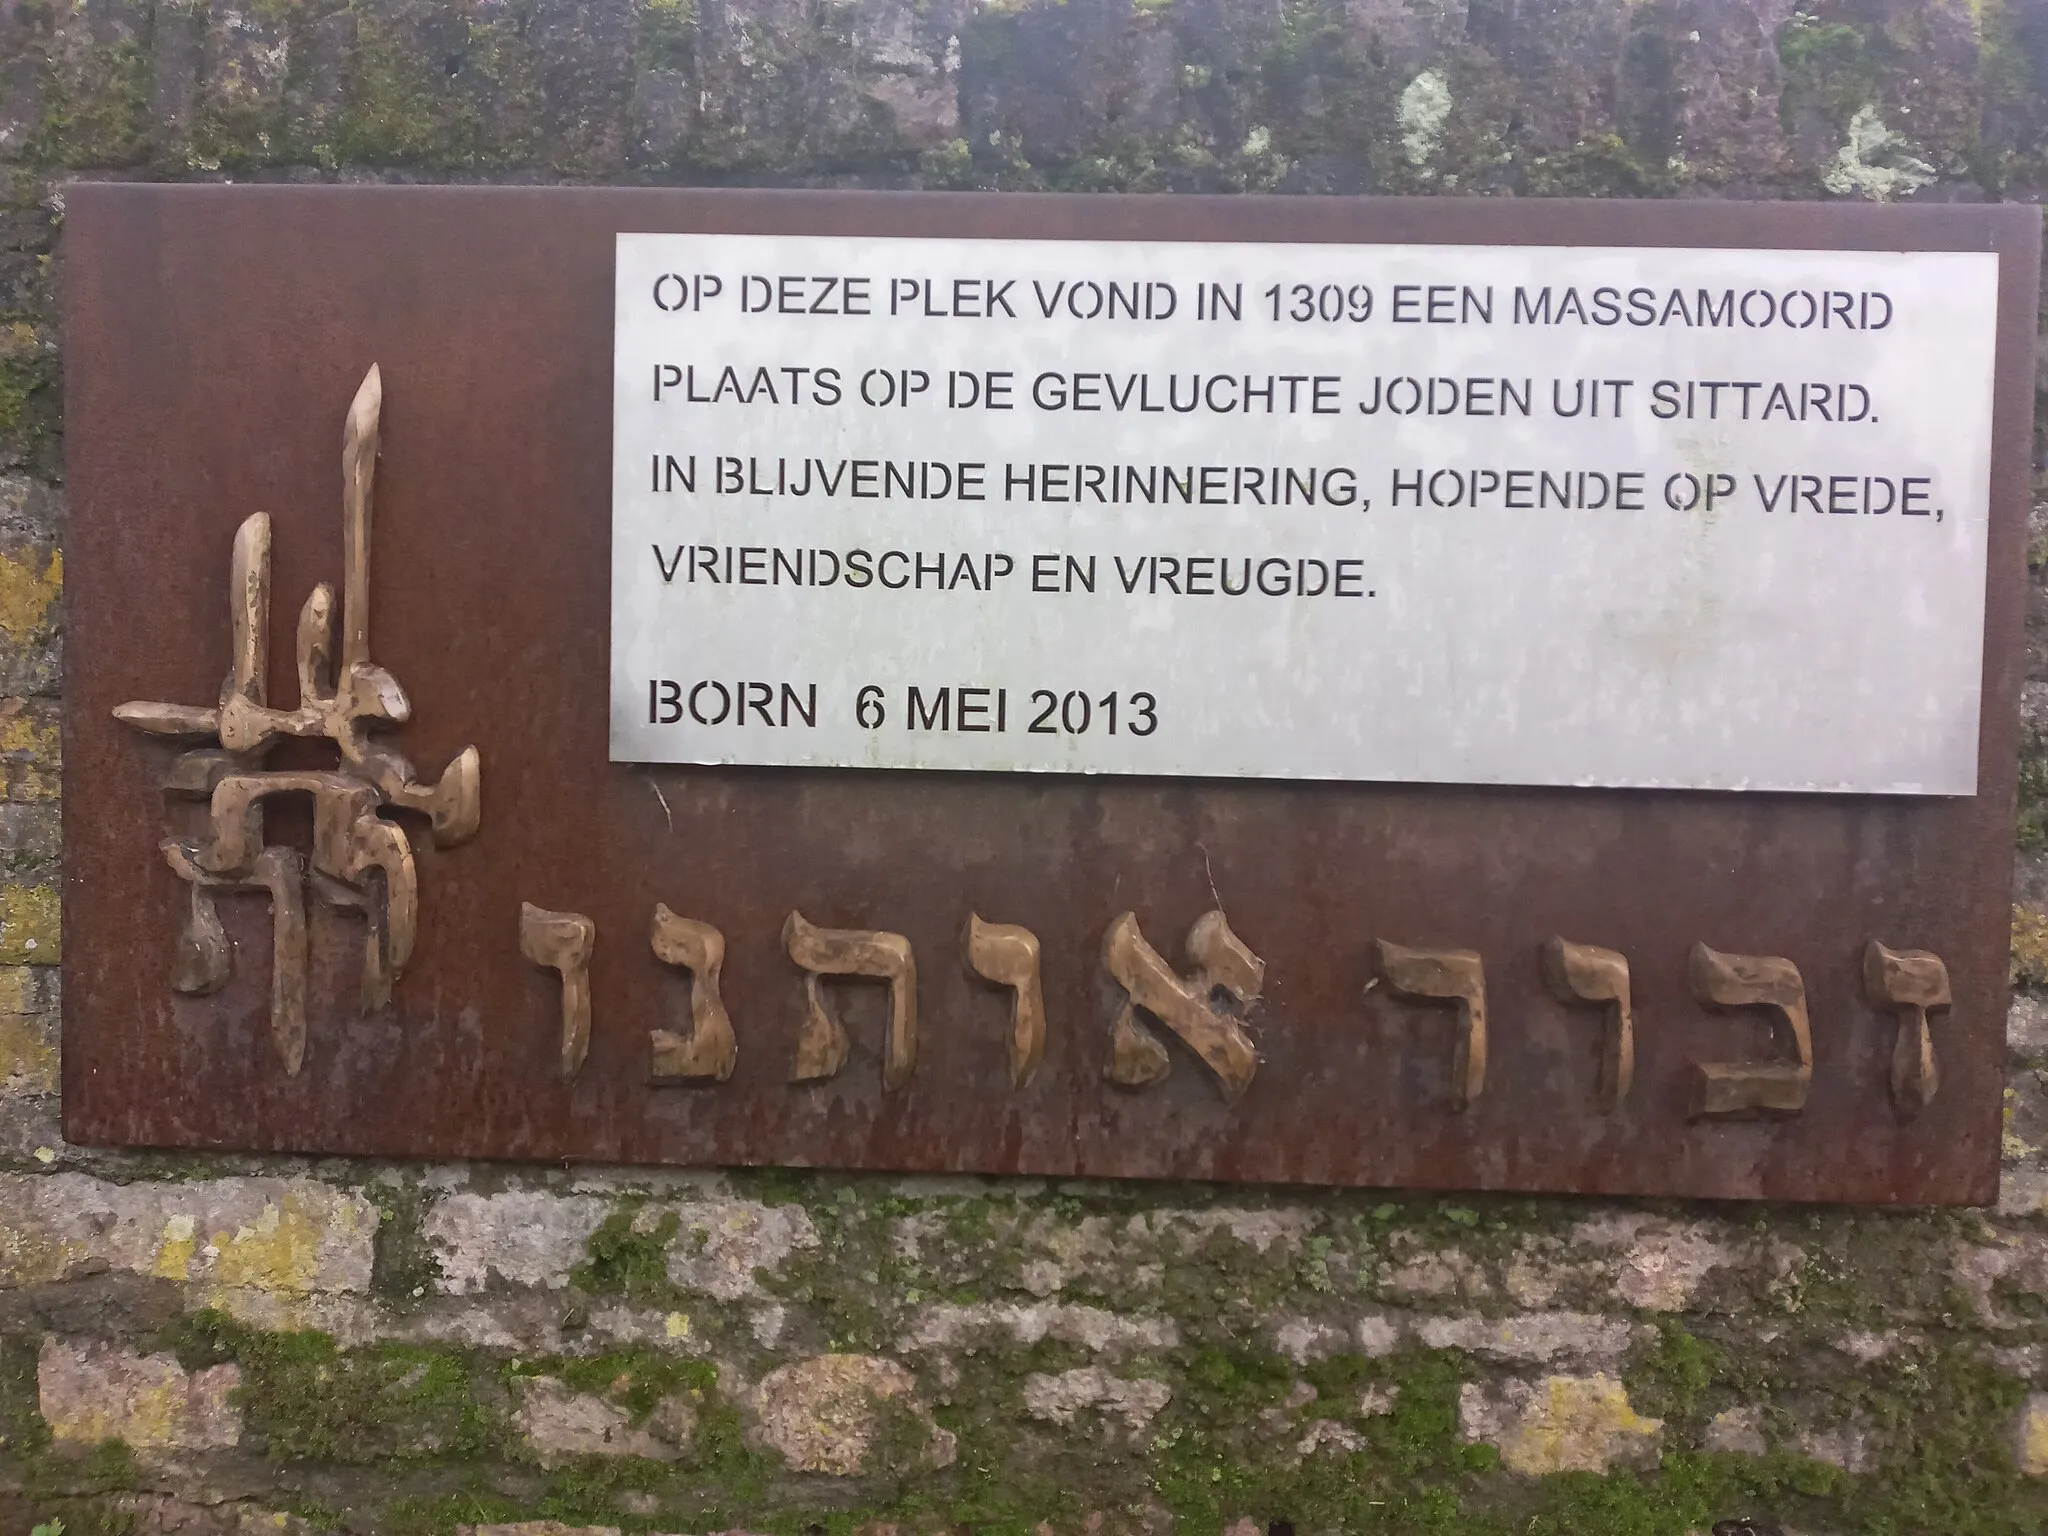 Photo showing: Herdenkingsbord aan de moord op 110 Joden in Kasteel Bord in het jaar 1309. Bord onthuld op 6 mei 2013.